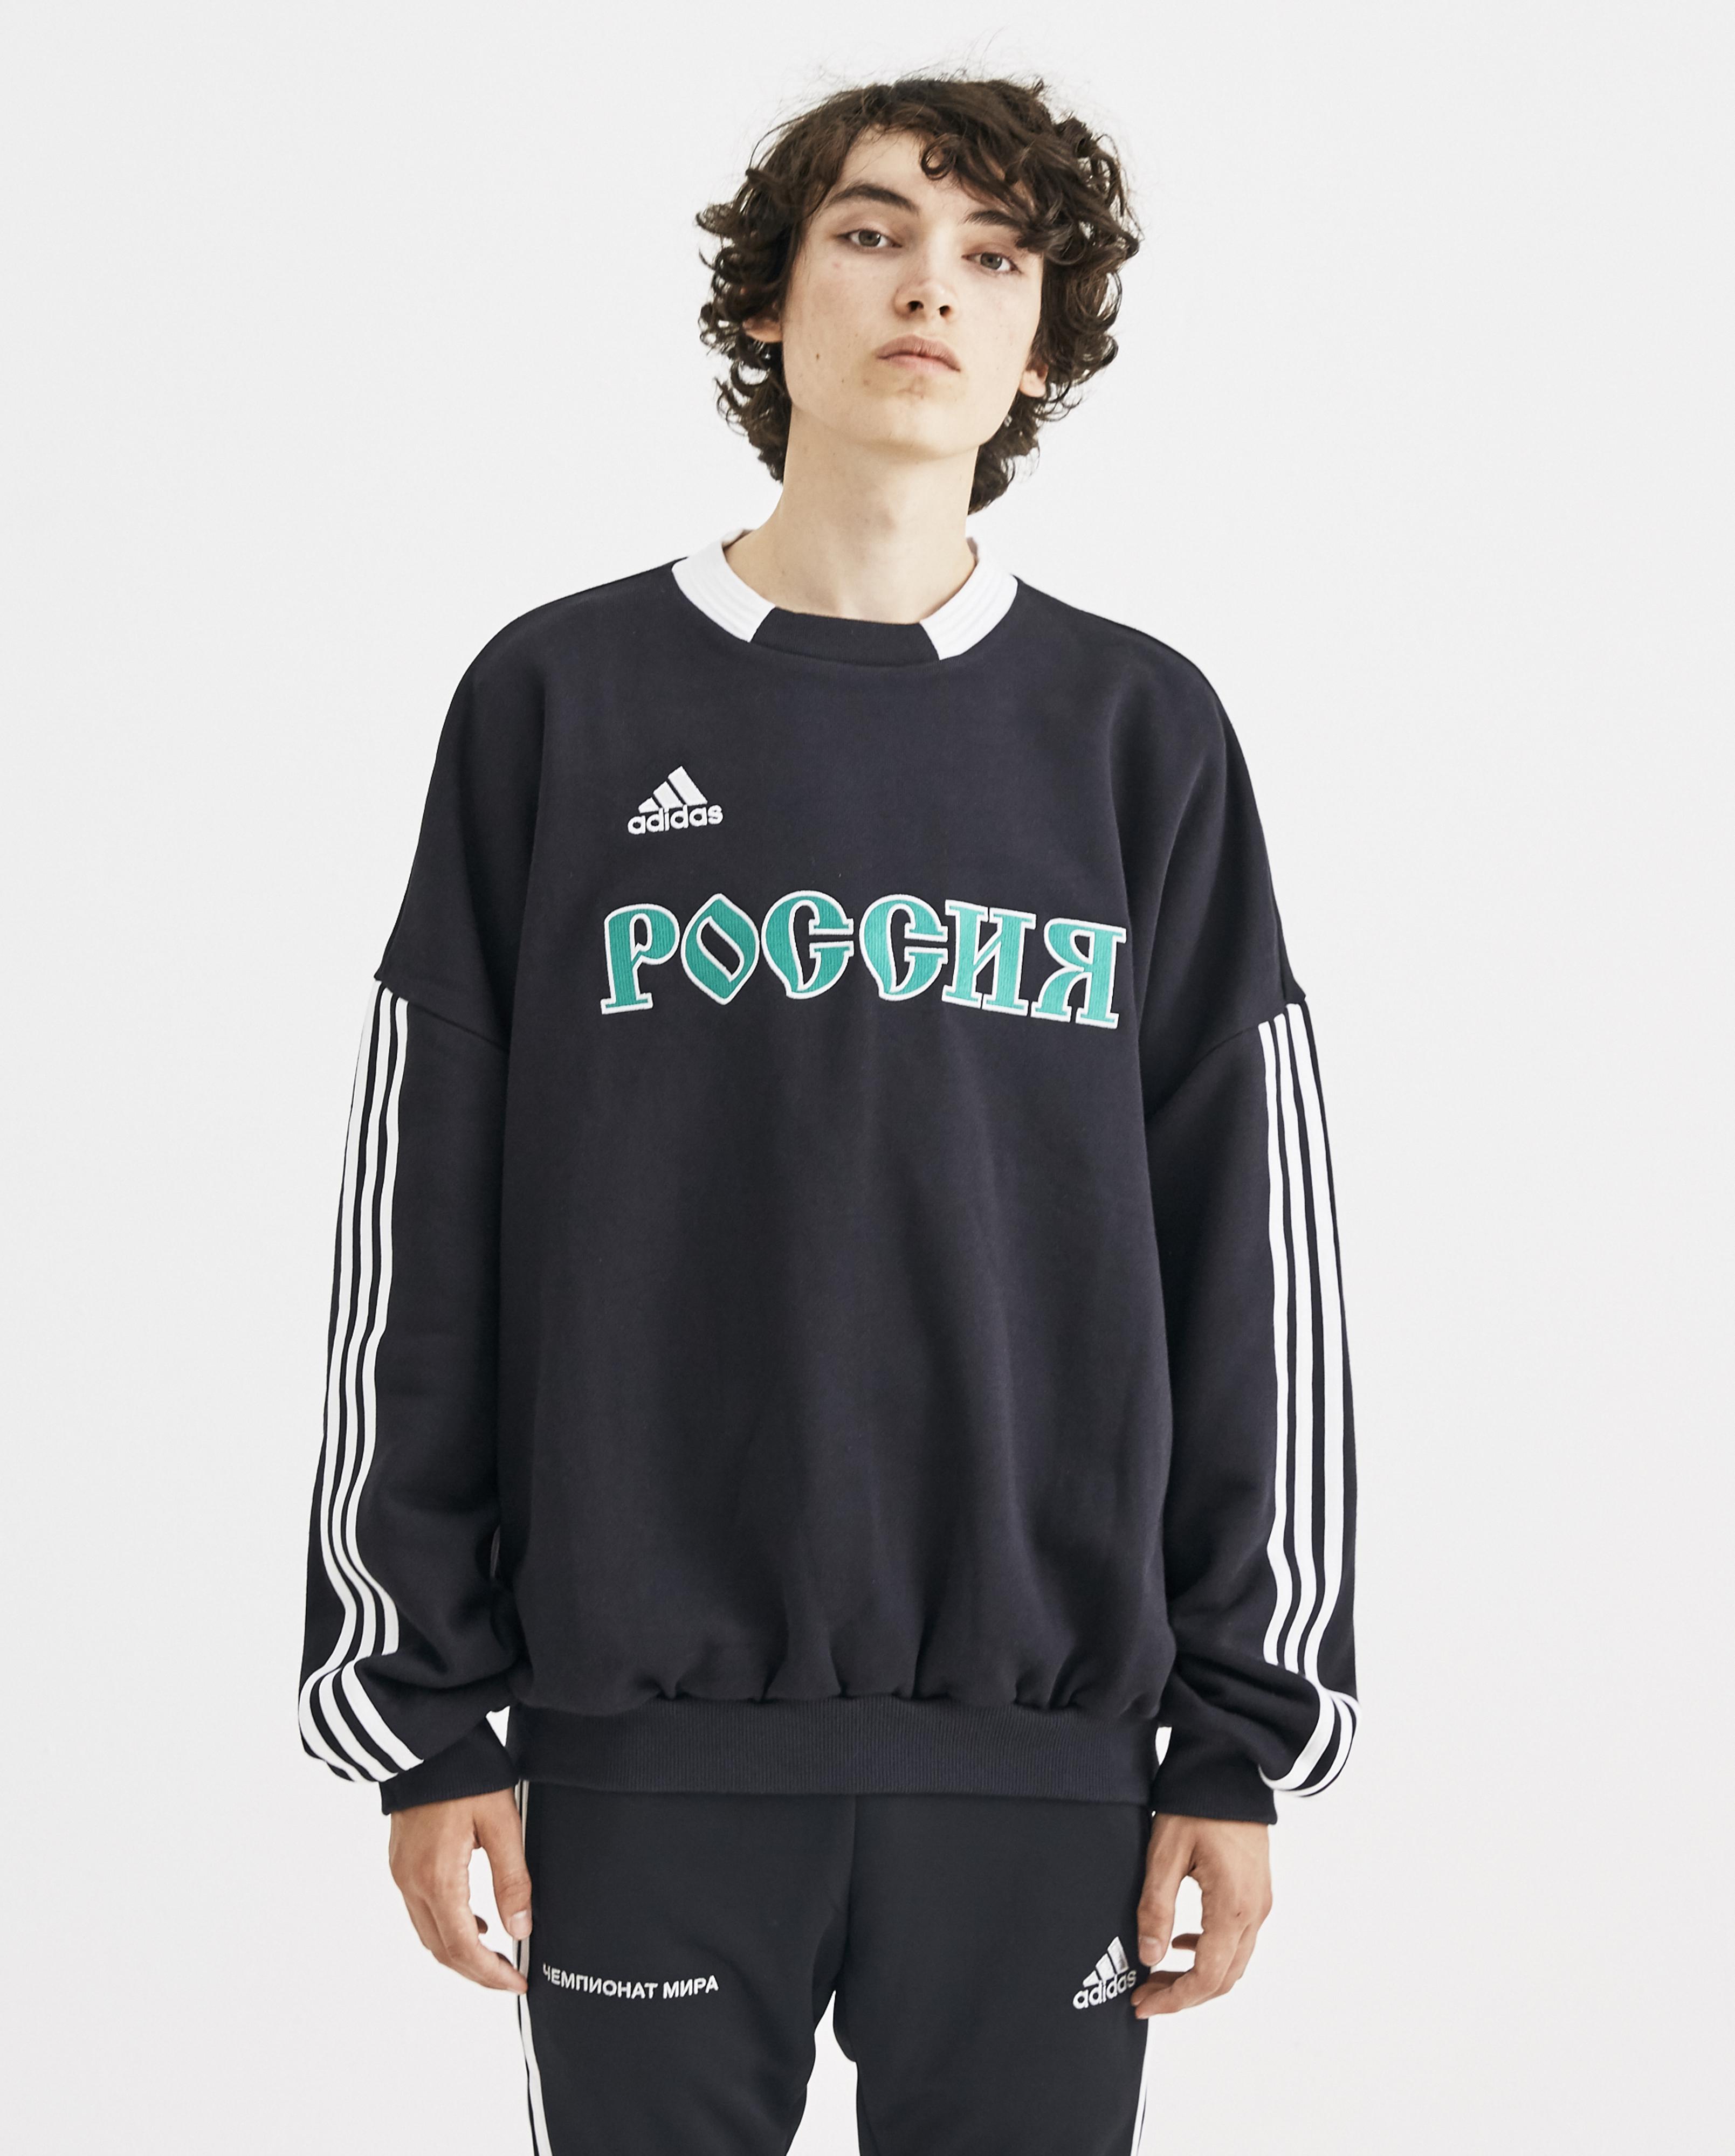 gosha rubchinskiy x adidas embroidered sweatshirt